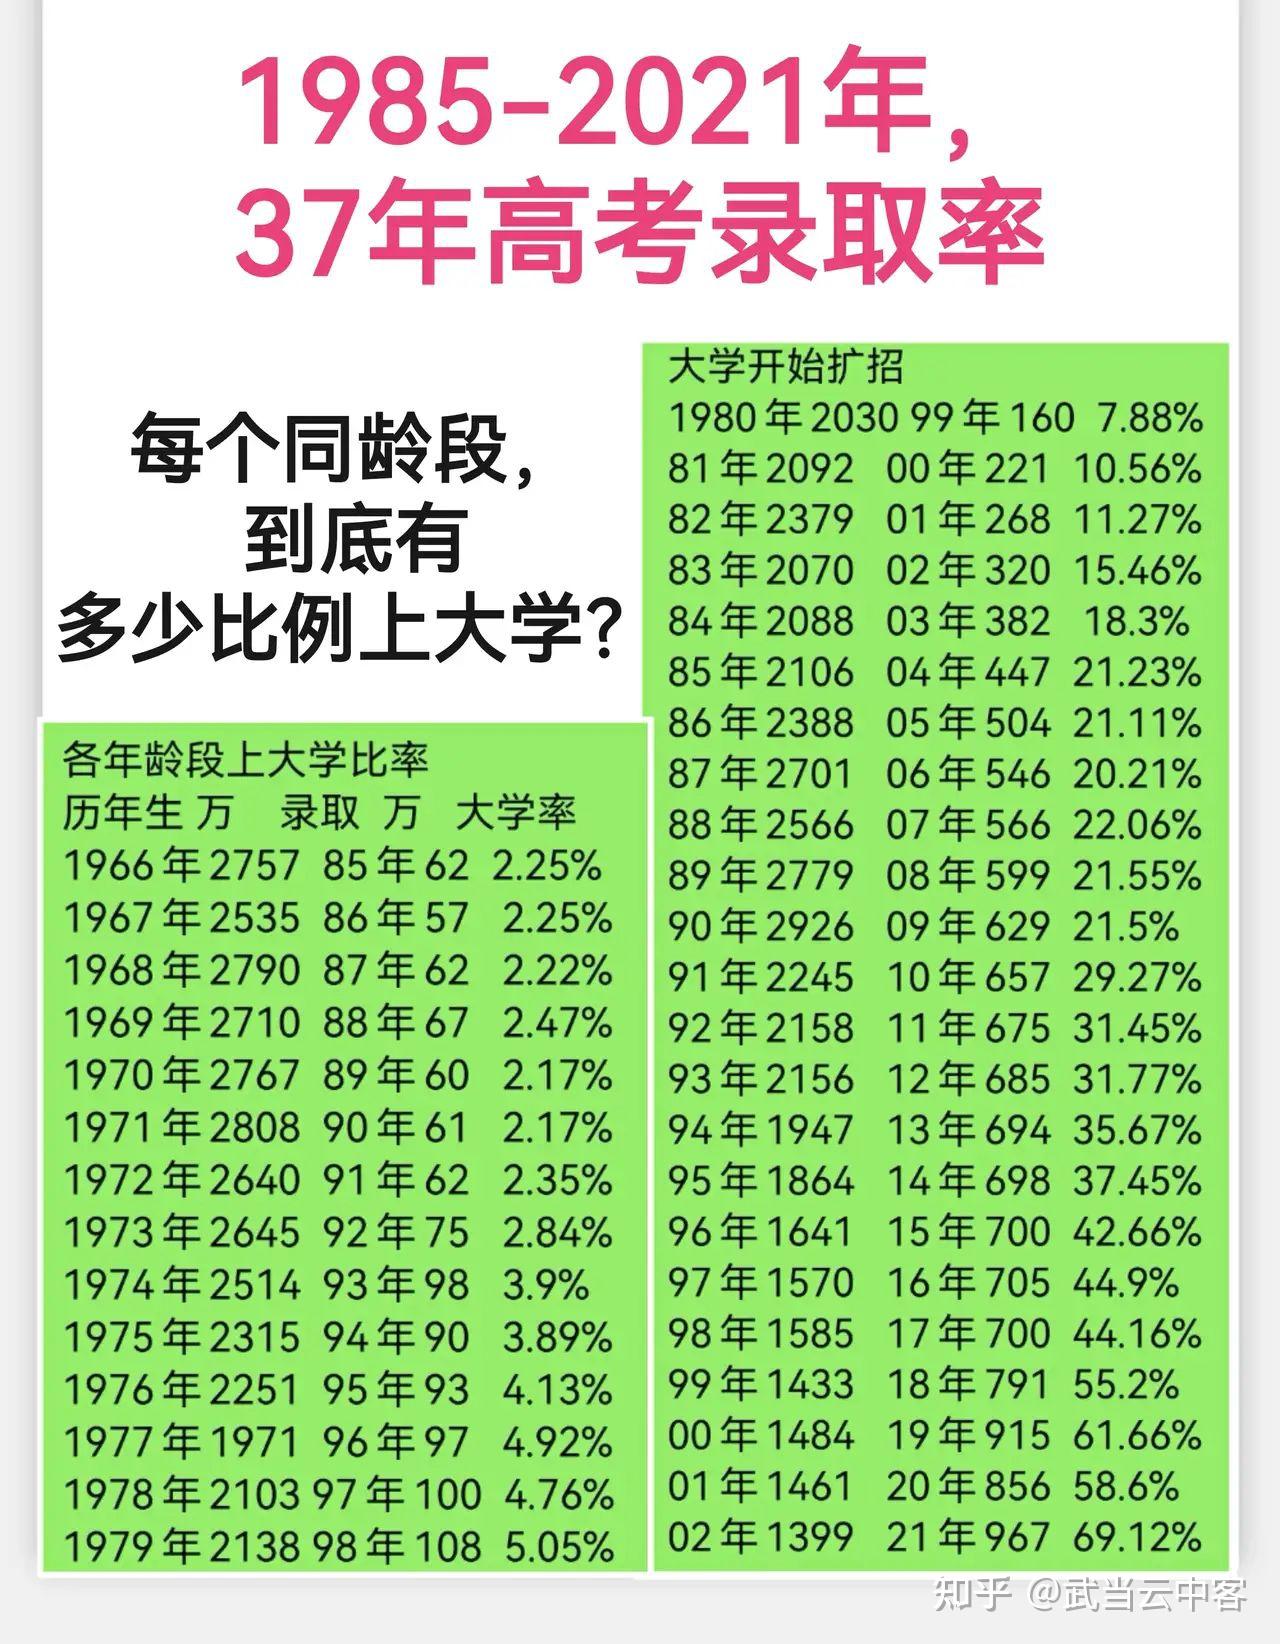 中国31省份男女比例排名出炉 “00后”性别比失衡显著-侨报网